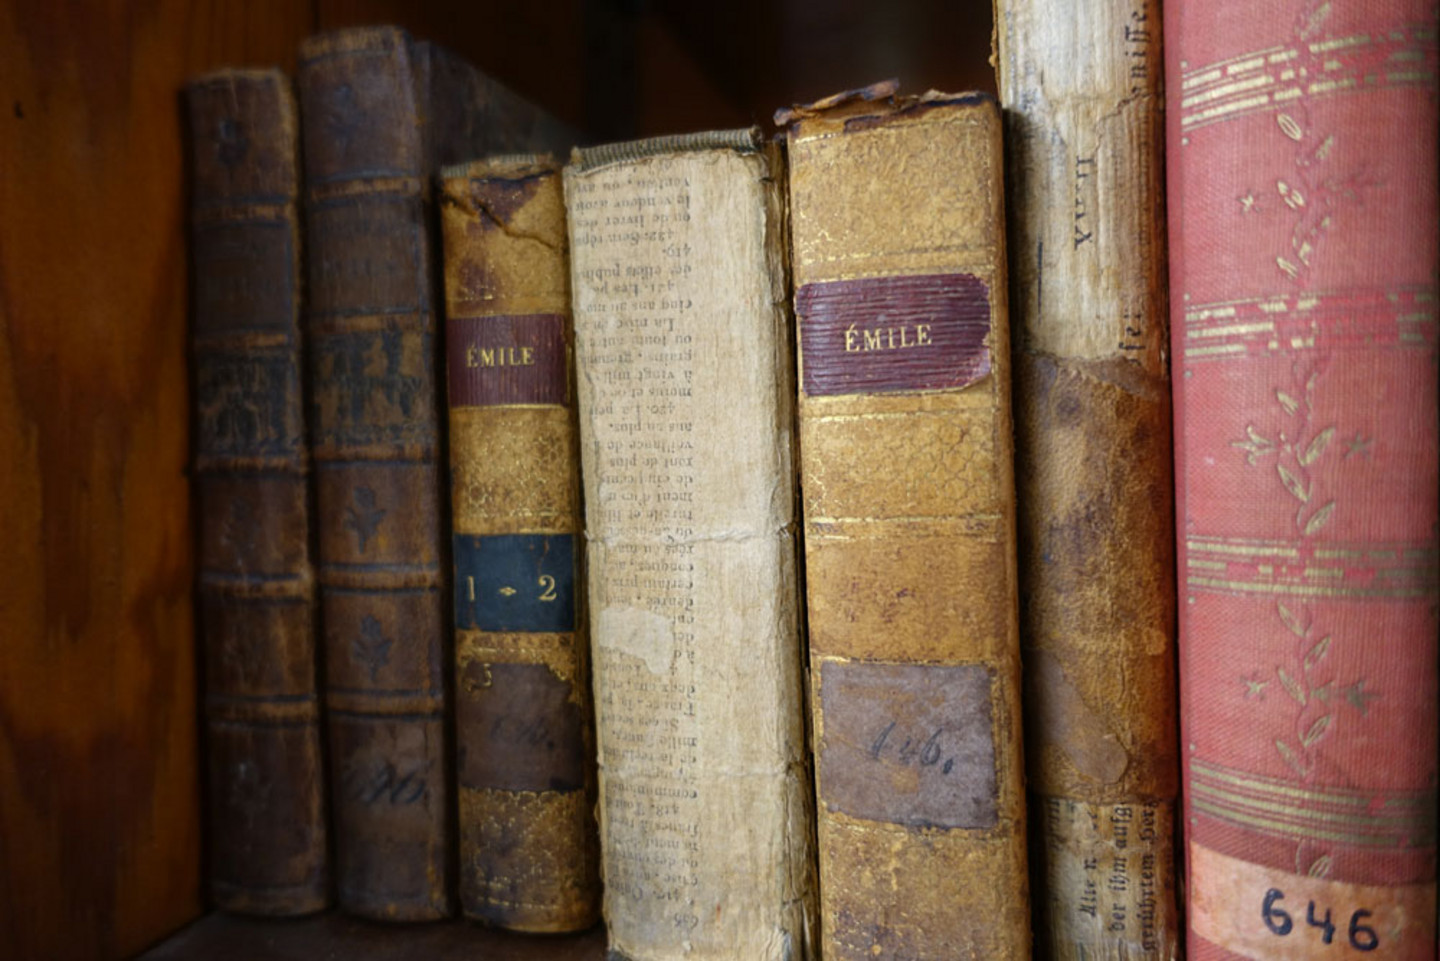 Detailansicht eines Bücherregals mit sieben Büchern, die teilweise keinen Buchrücken mehr haben, so dass nur der Buchblock zu sehen ist. Die restlichen Einbände sind verschiedenfarbig, auf zweien kann man den Titel Emile lesen.